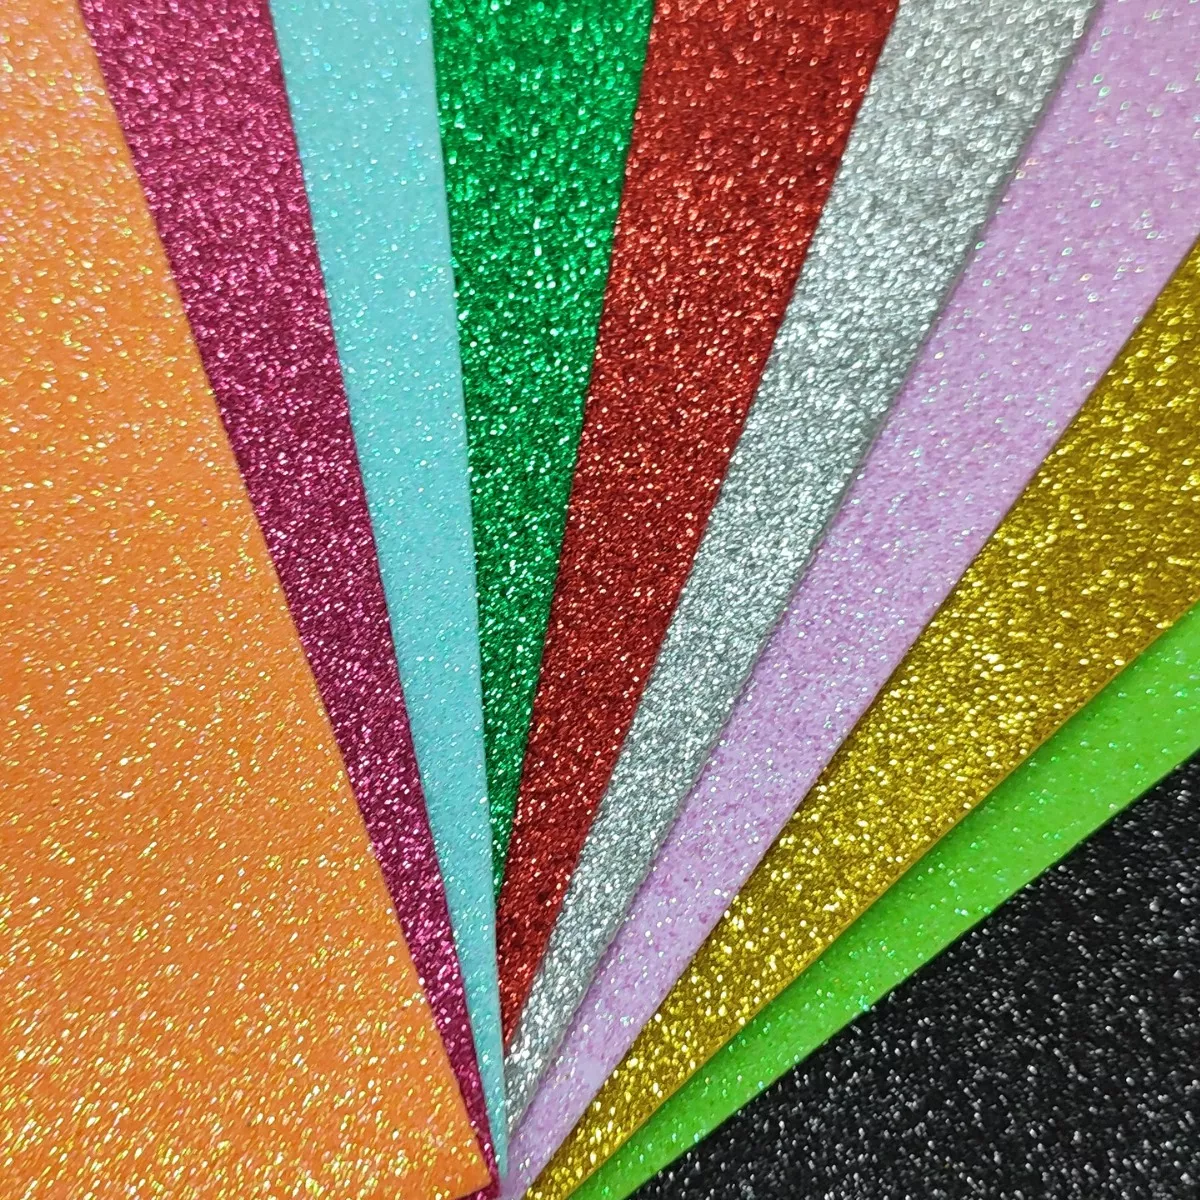 Segunda imagem para pesquisa de eva com glitter